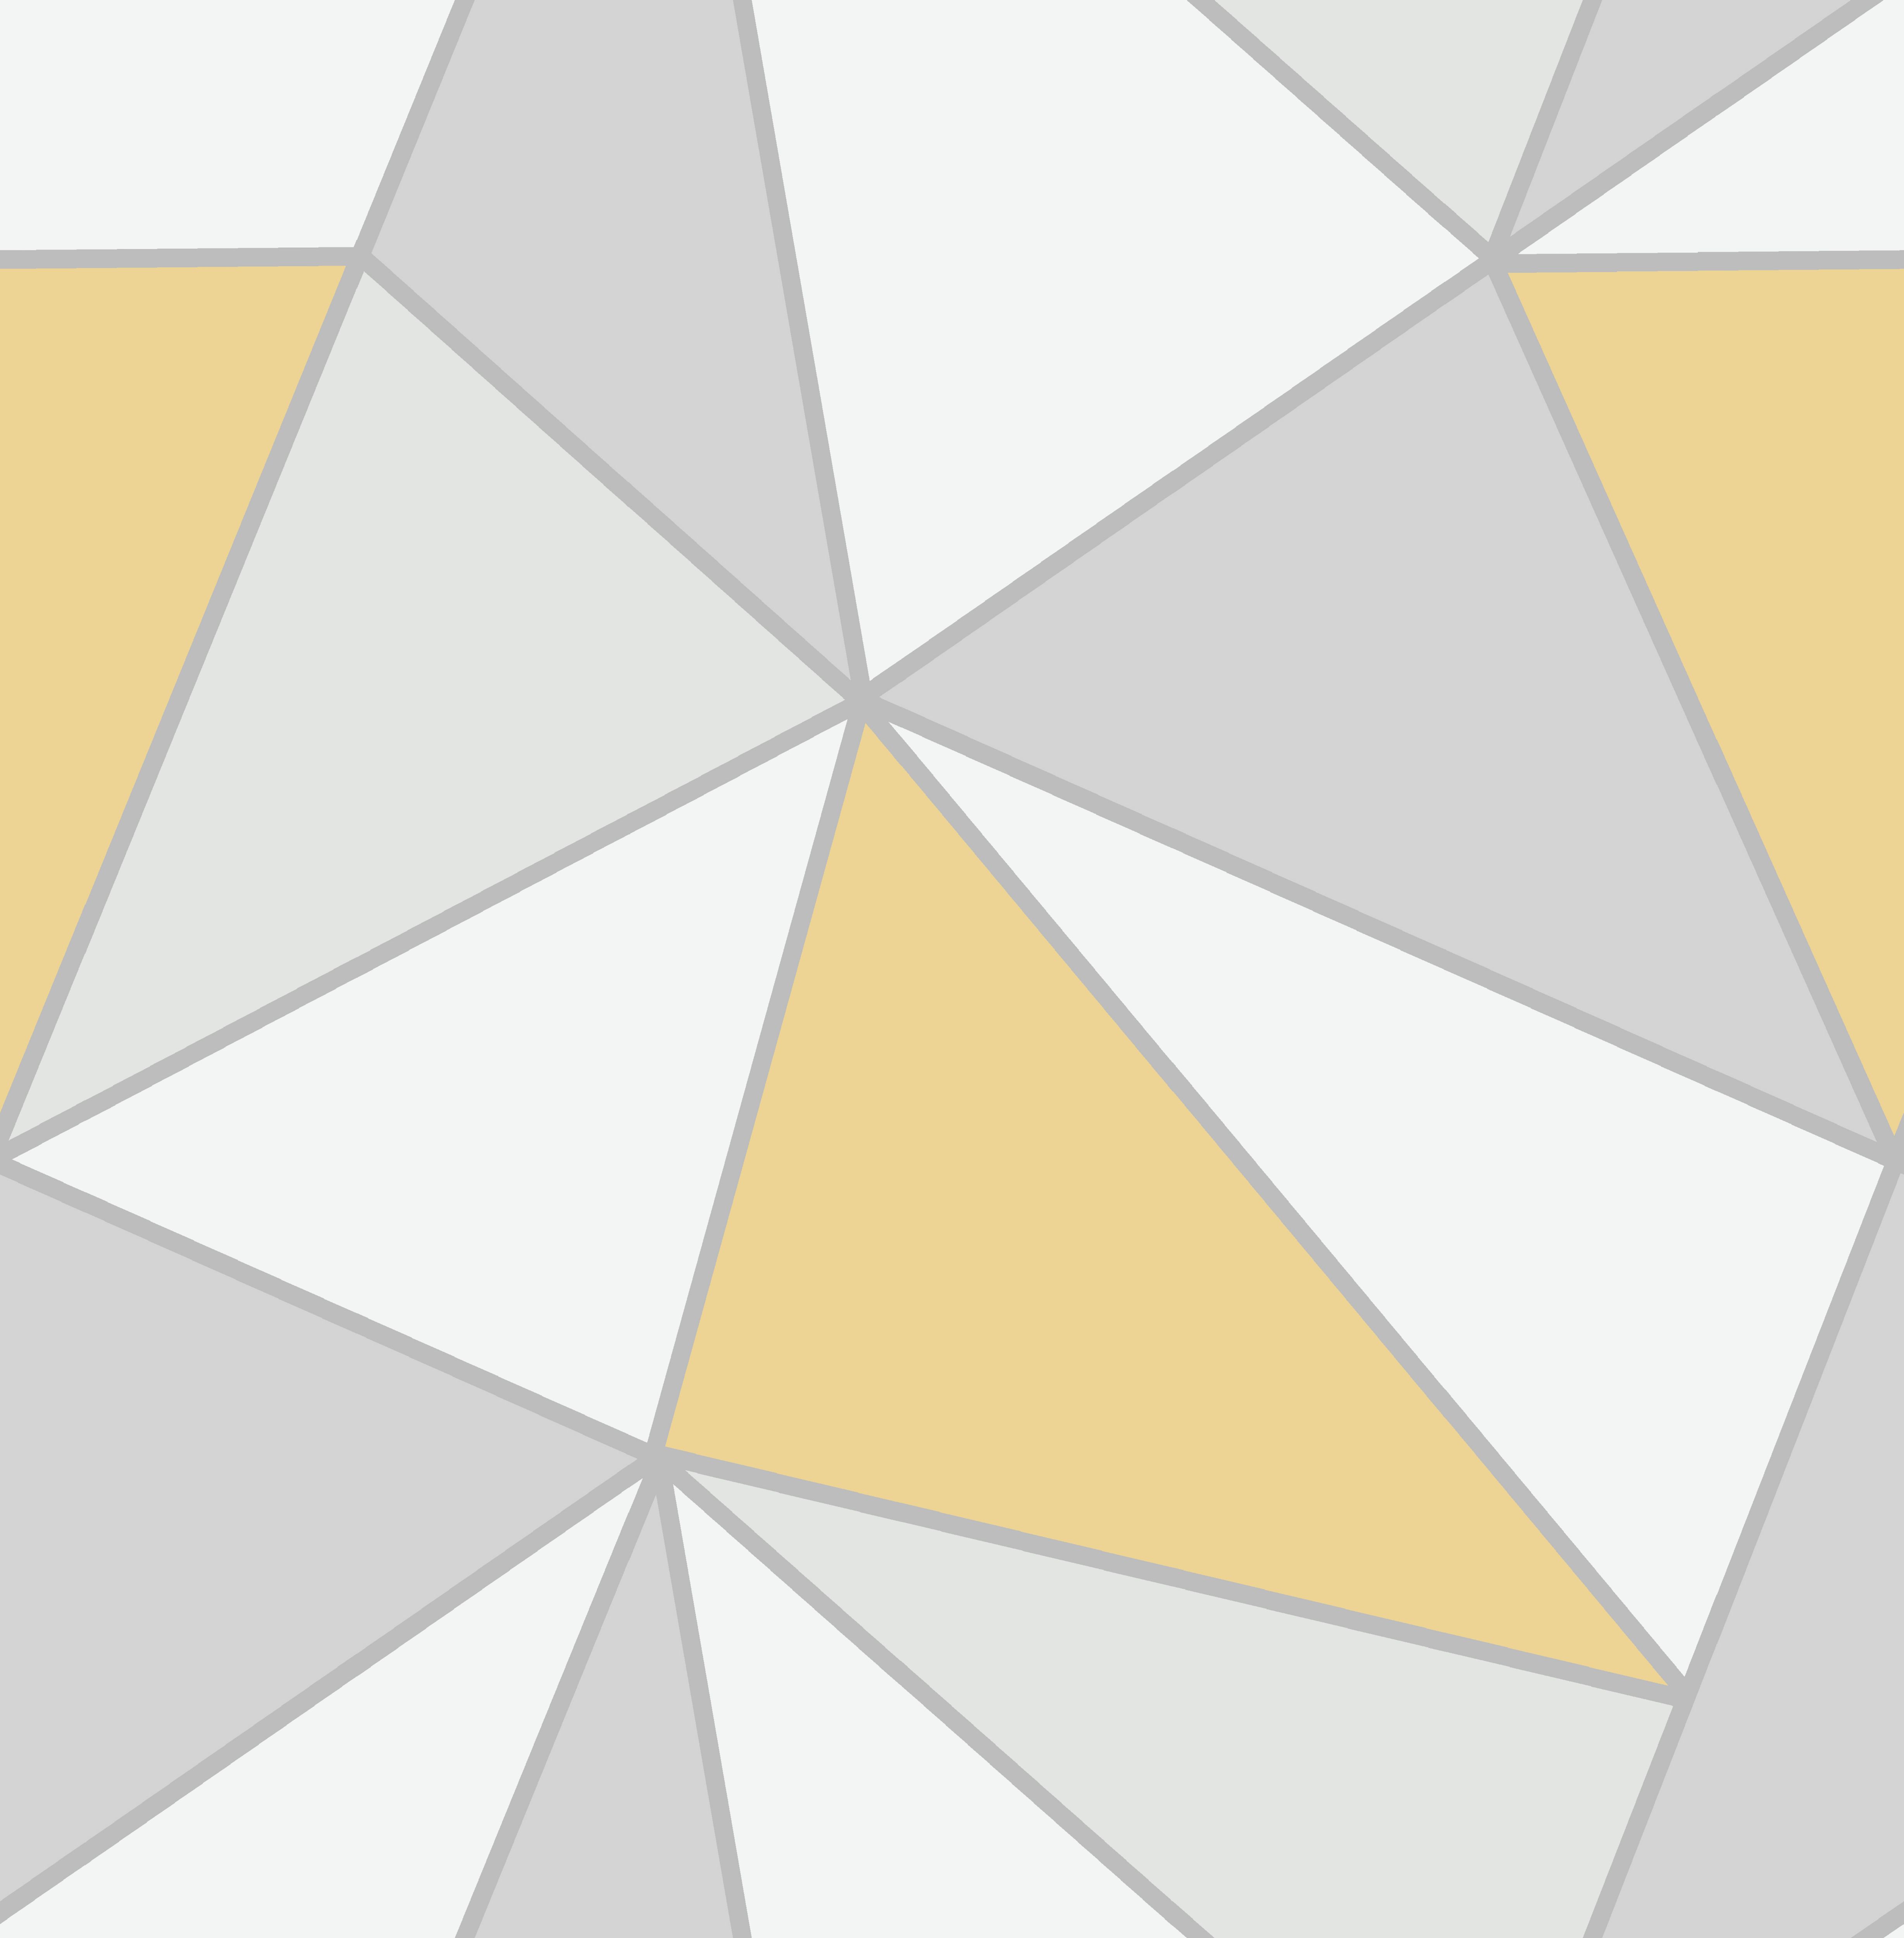 yellow geometric pattern